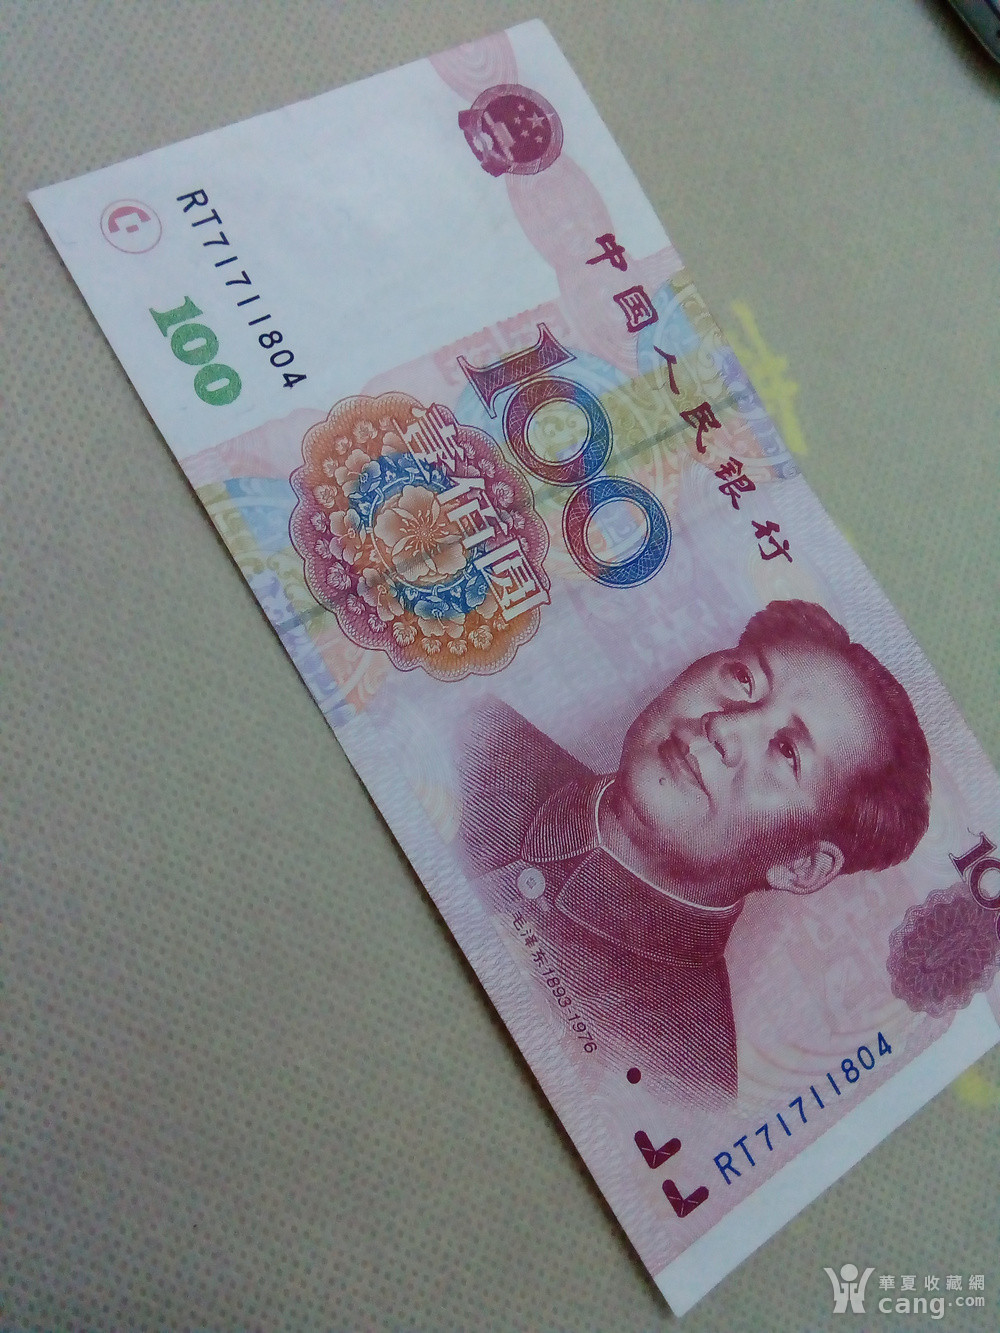 中国一百元硬币图片